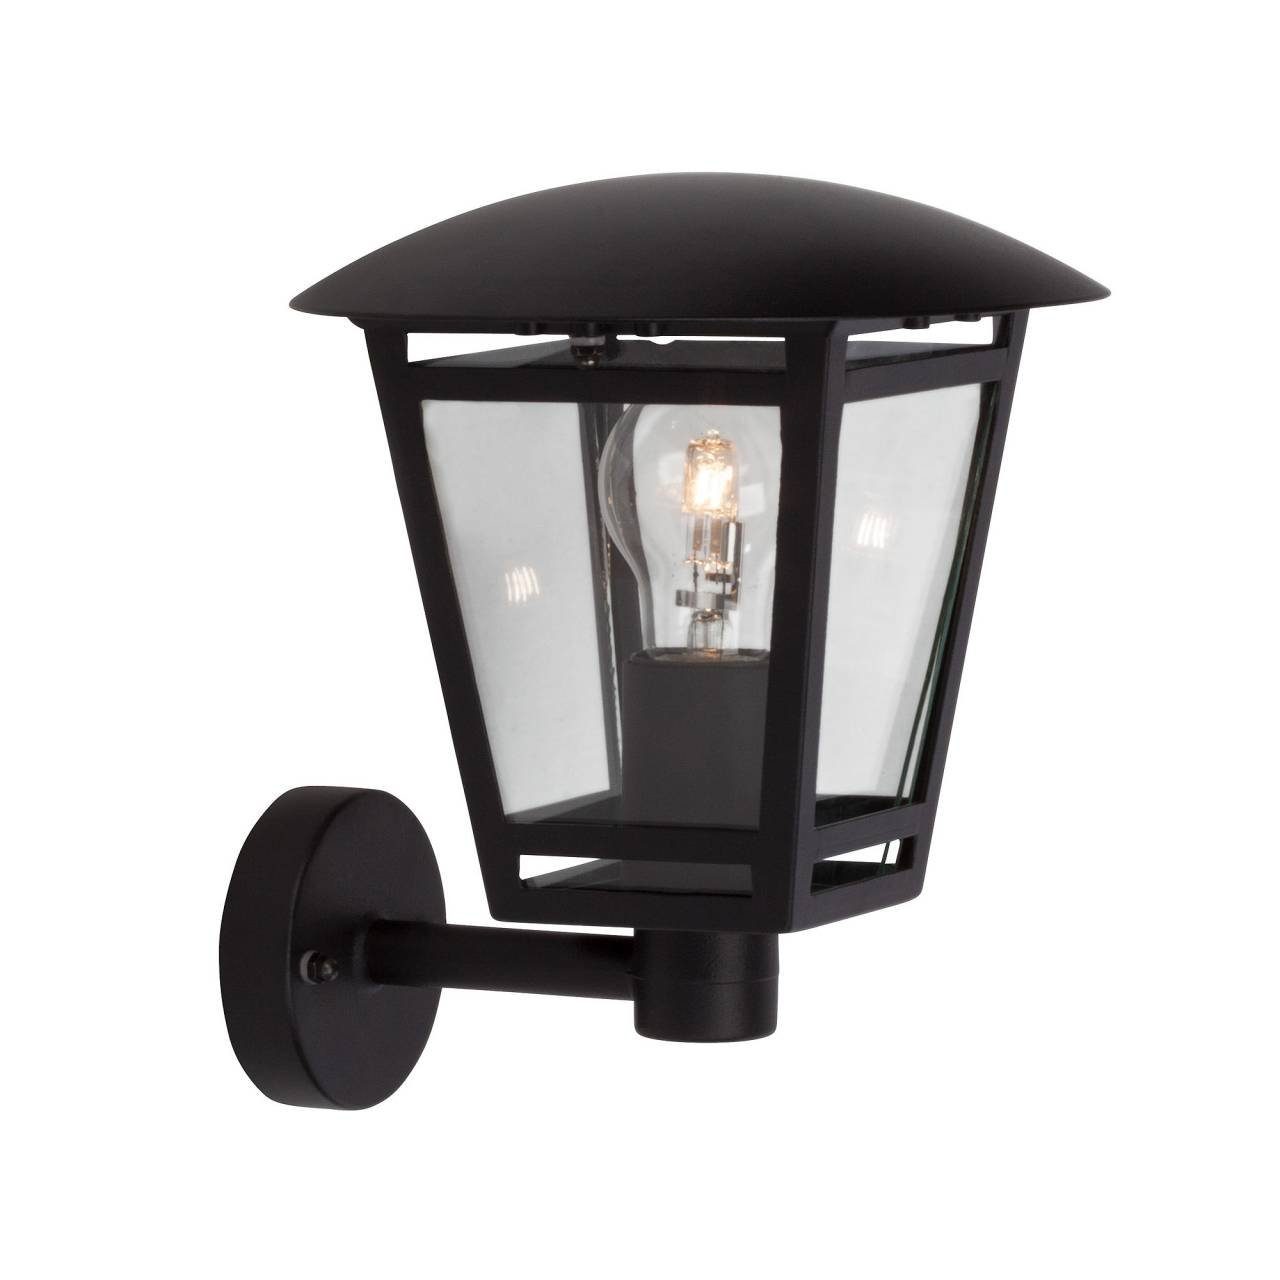 Sparaktion Brilliant LED geeig Außen-Wandleuchte 1x schwarz Riley stehend 40W, Außenwandleuchte A60, Lampe Riley, E27